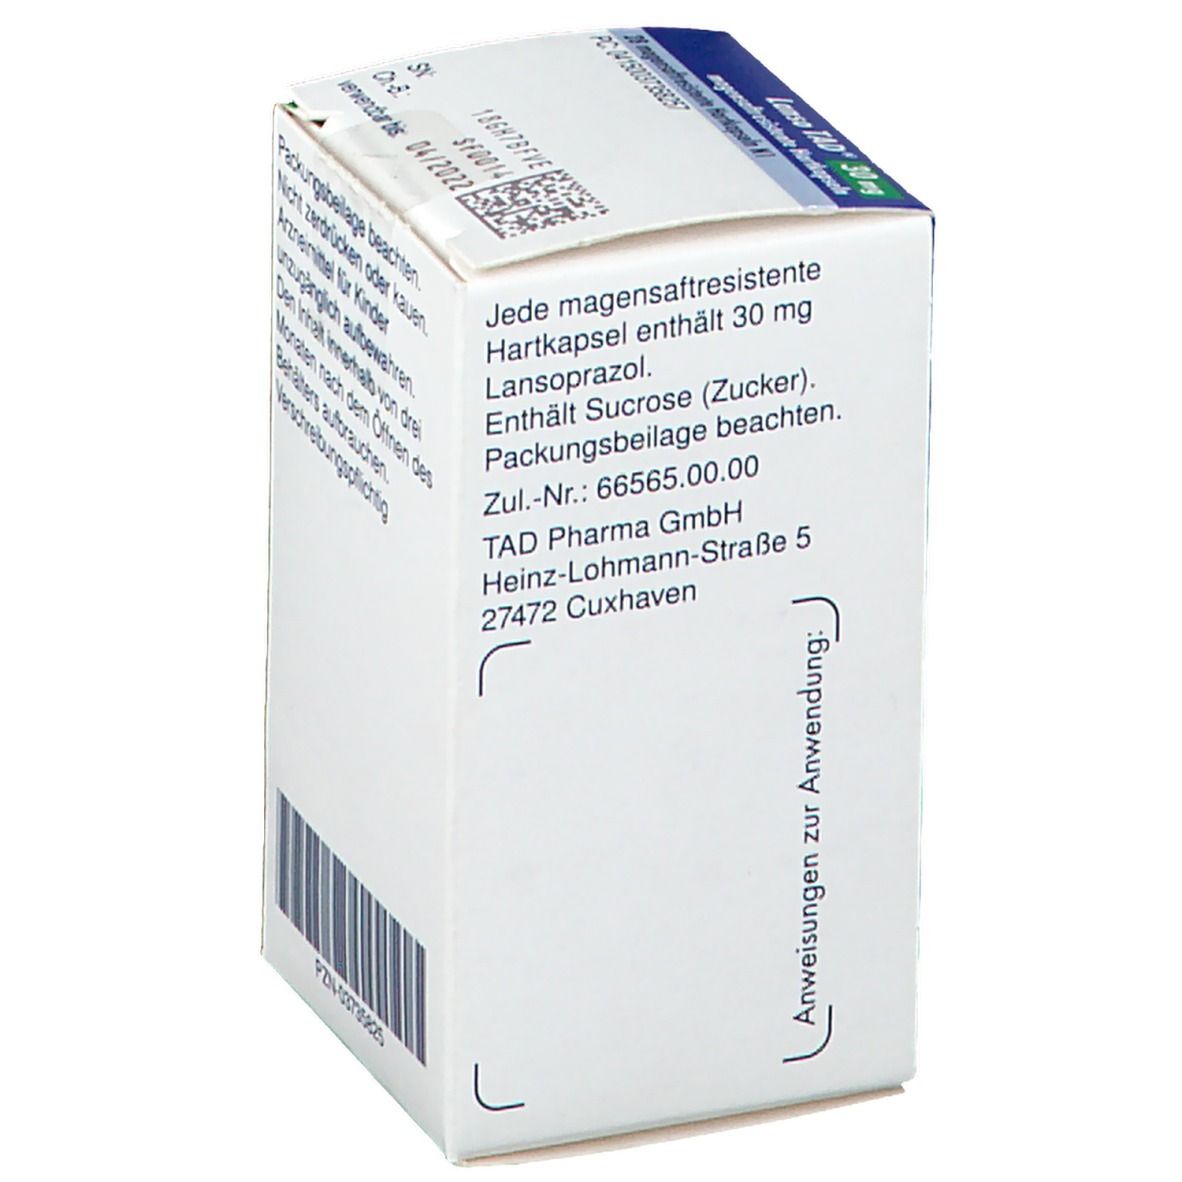 Lanso TAD® 30 mg